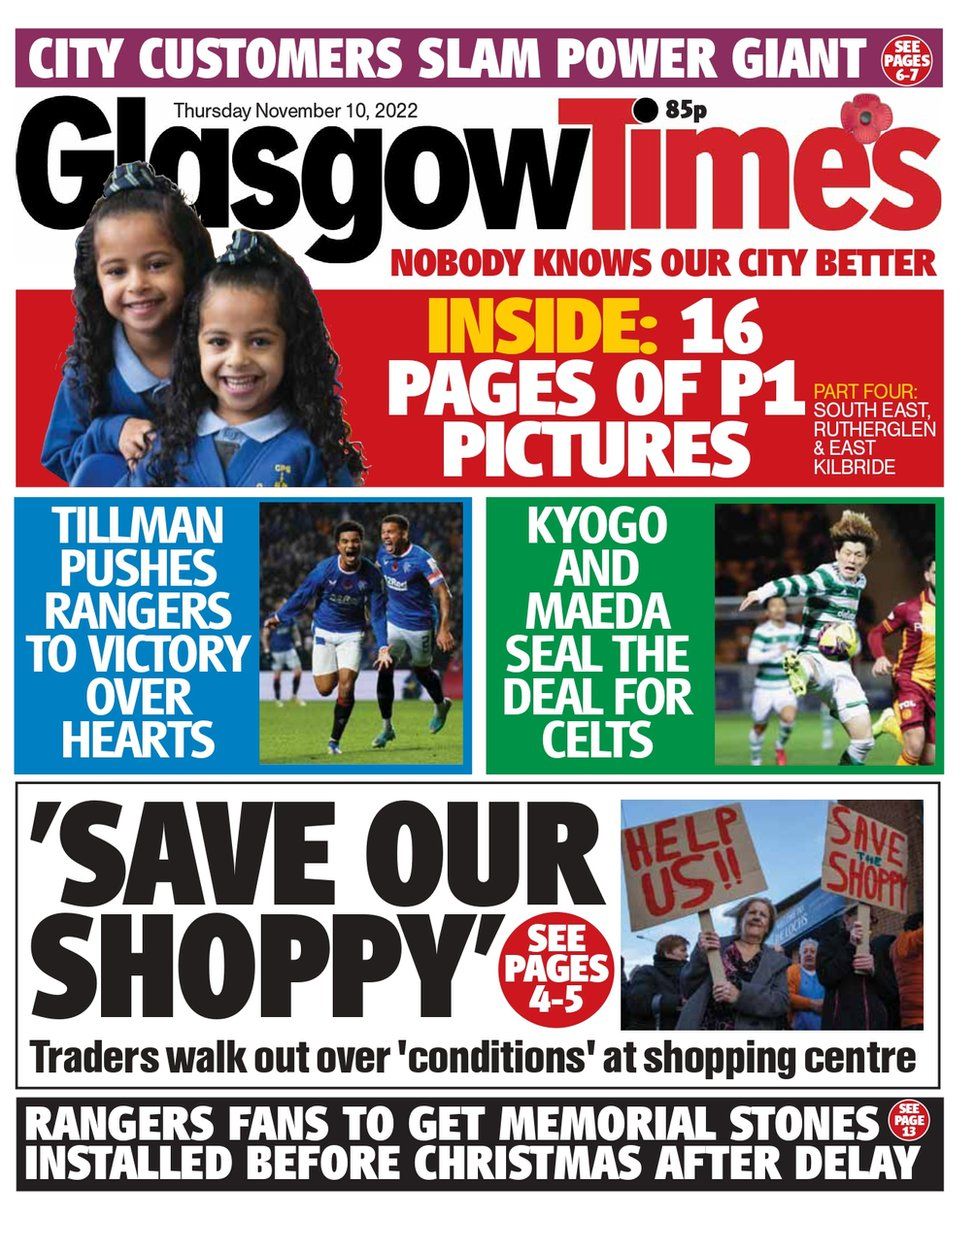 Glasgow Times